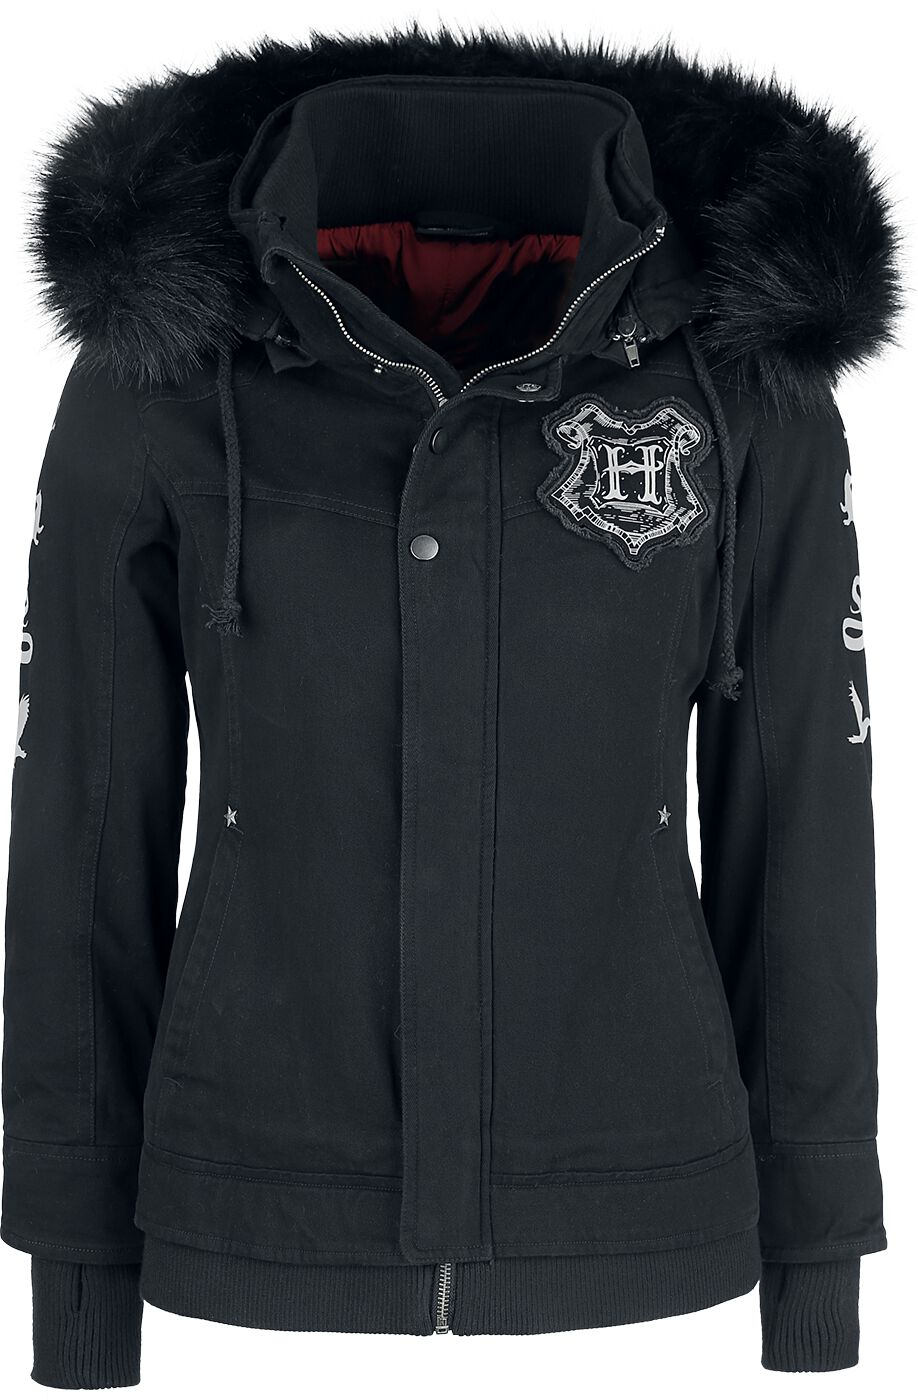 Harry Potter Winterjacke - Hogwarts Crest - XS bis XXL - für Damen - Größe L - schwarz  - EMP exklusives Merchandise!